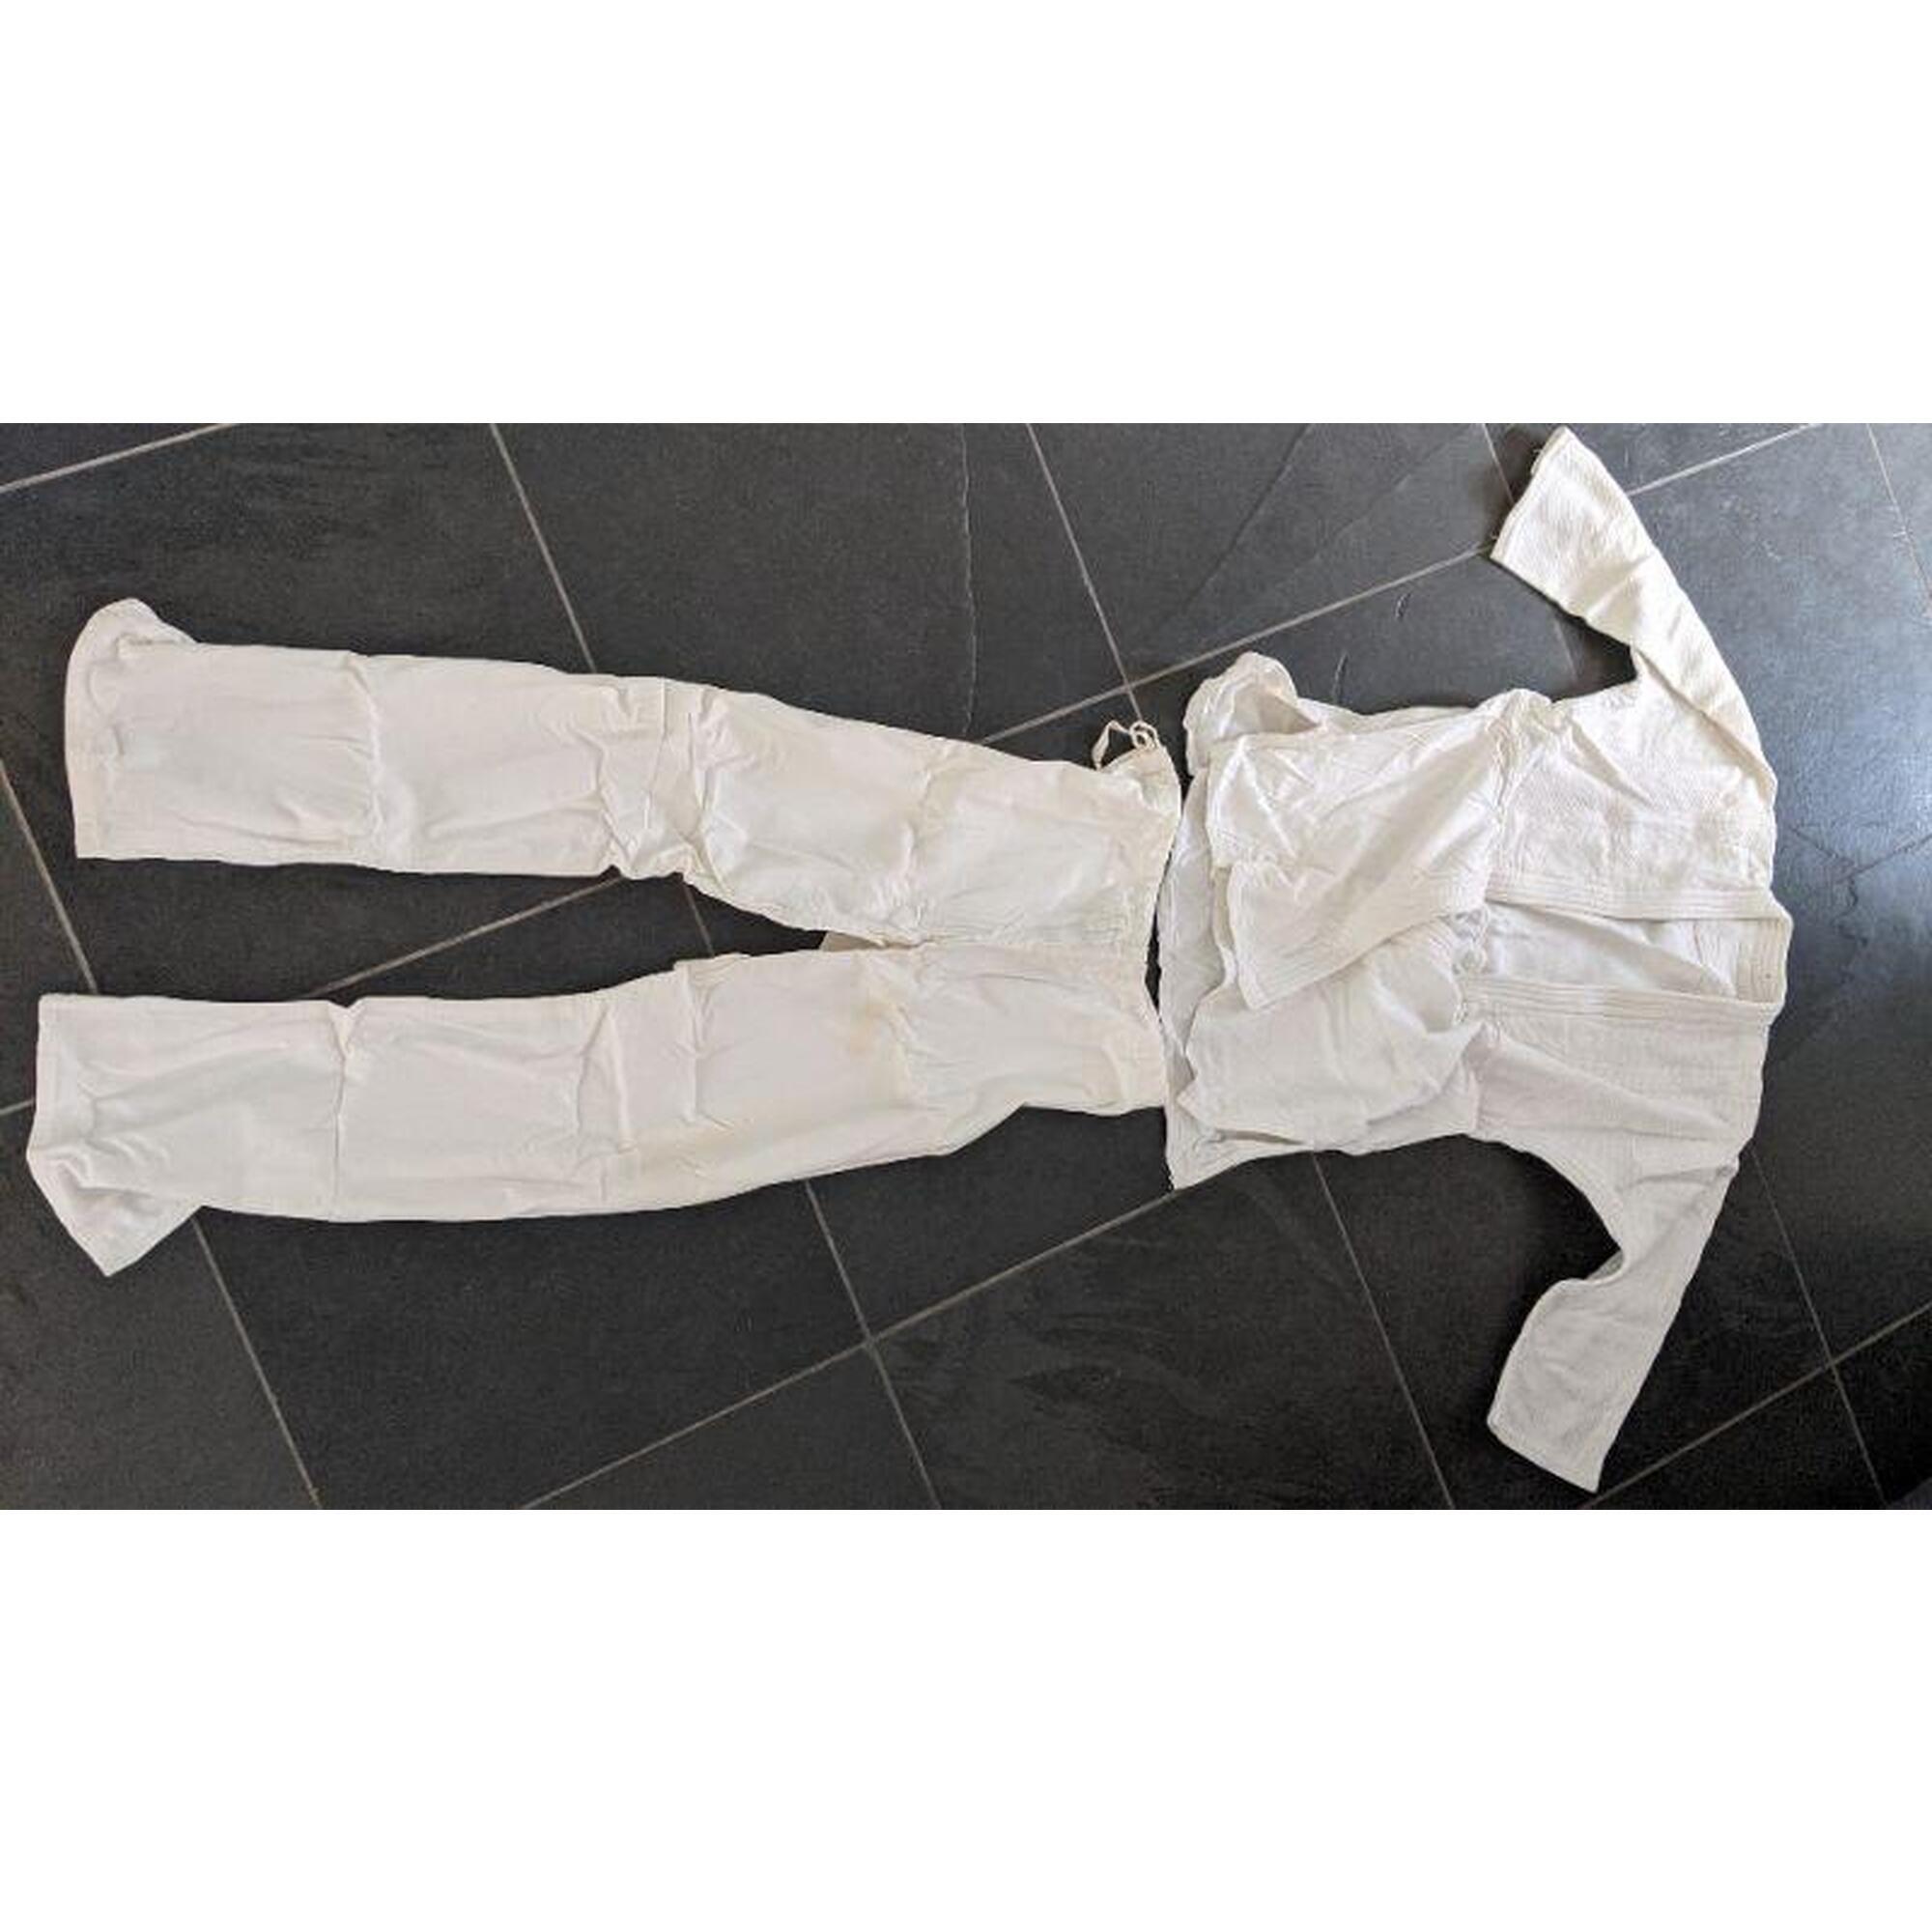 C2C - Capoeira pak - set van broek en shirt - Maat L